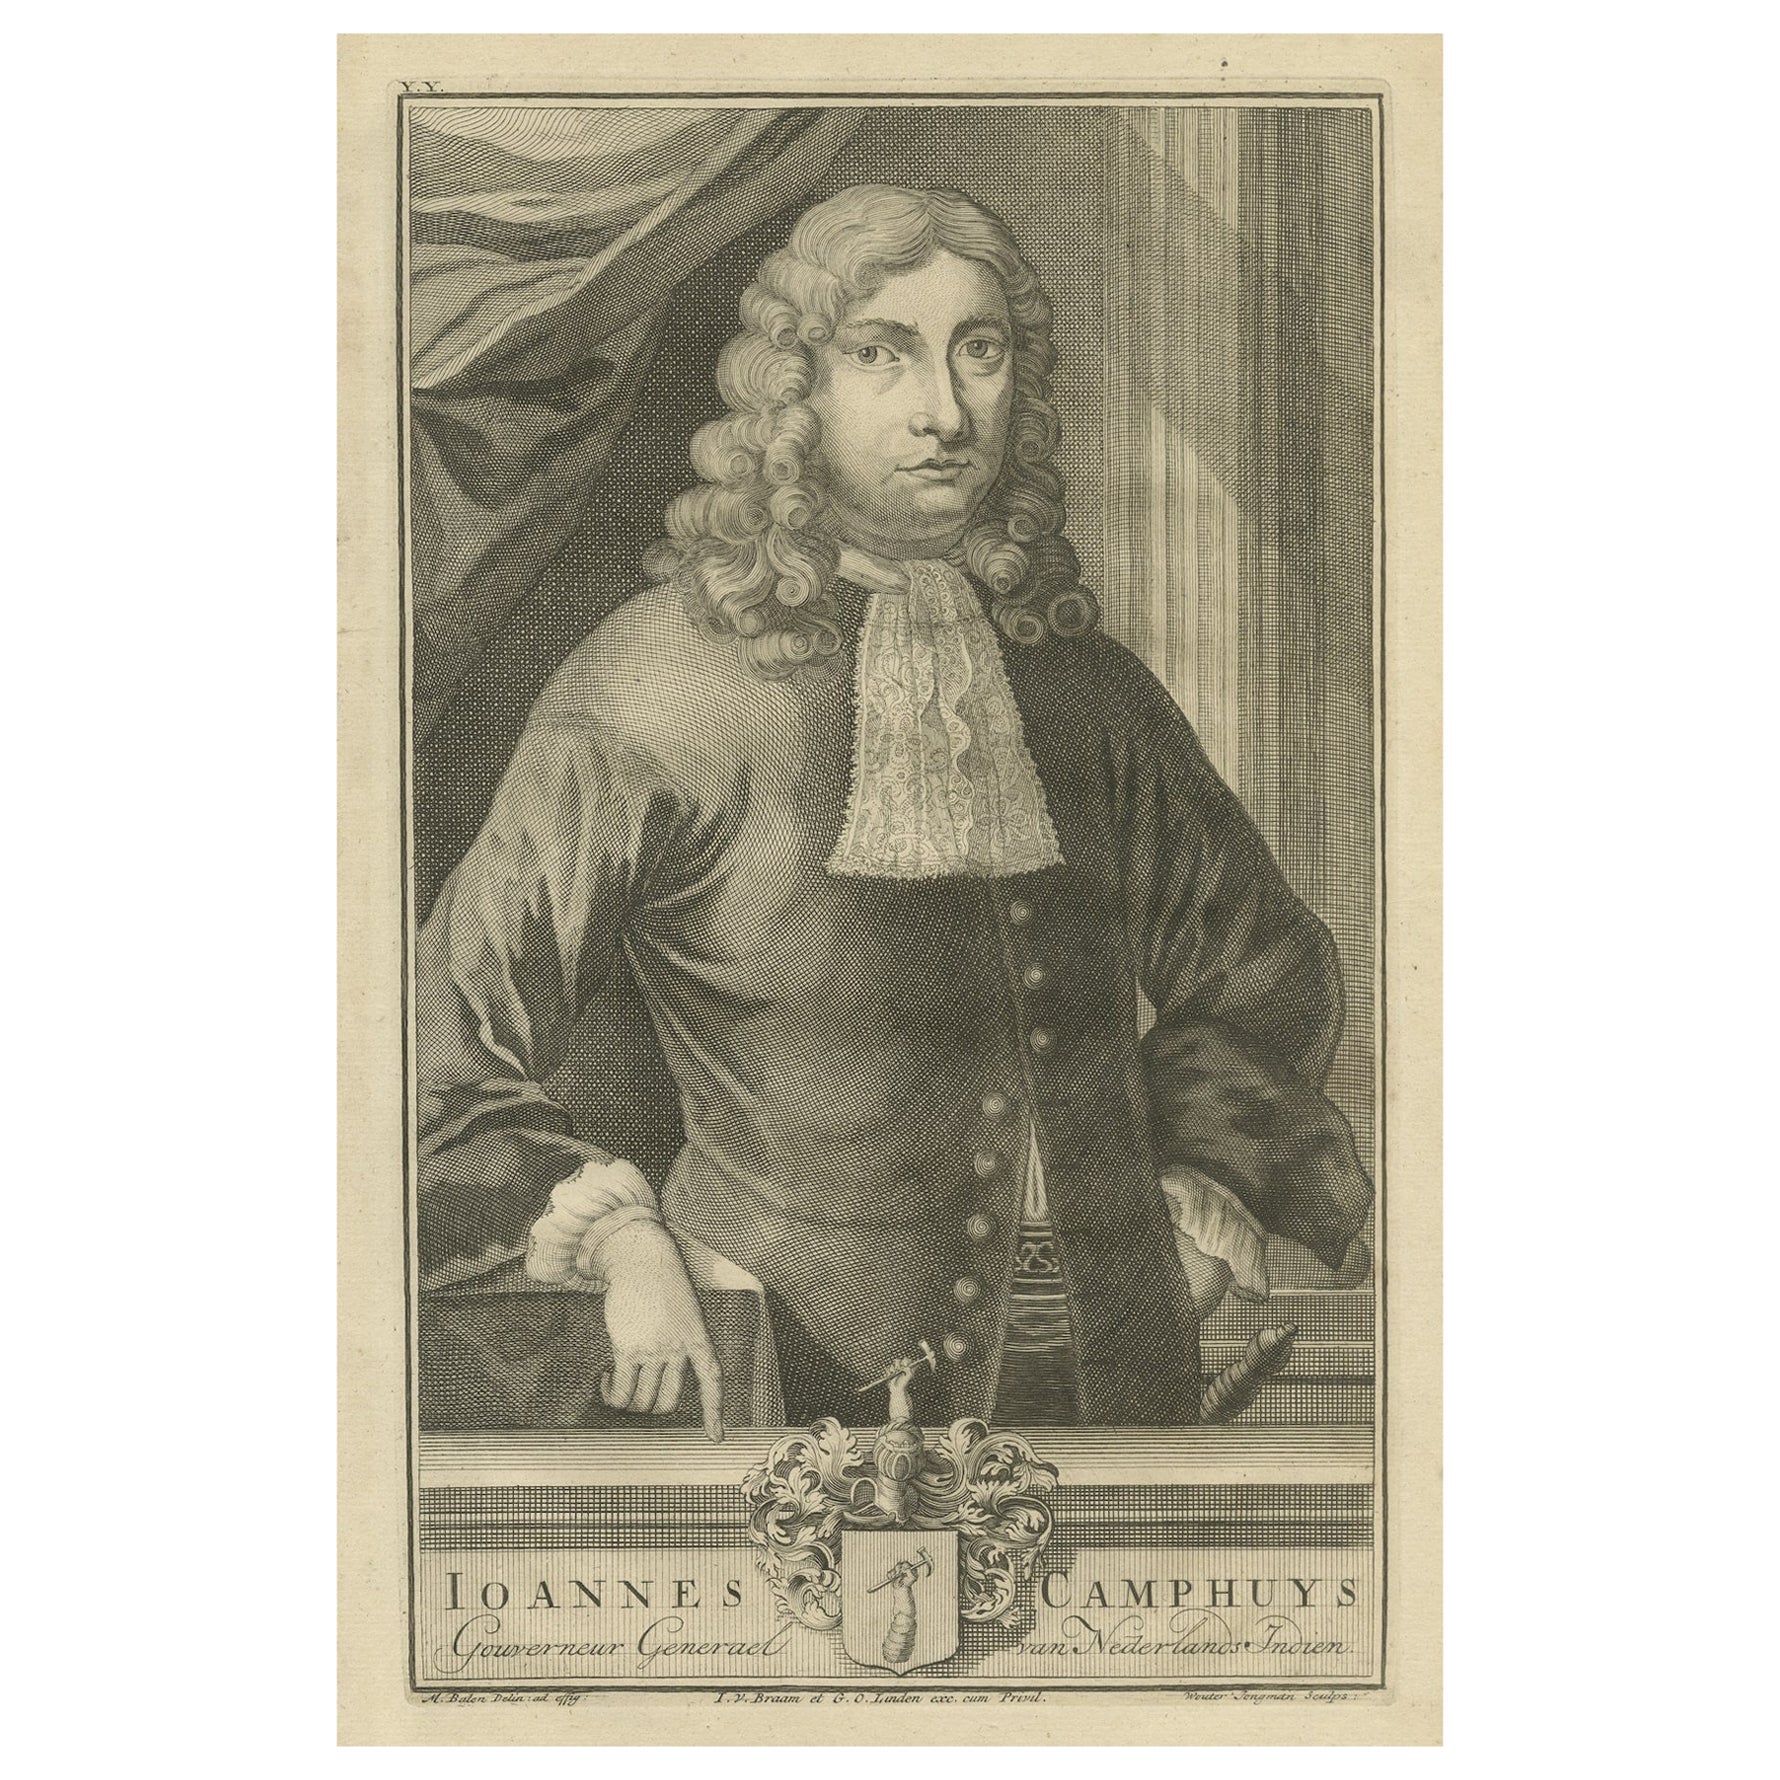 Les Indes orientales néerlandaises Ioannes Camphuys : gouverneur-général vénérable de la VOC, 1724